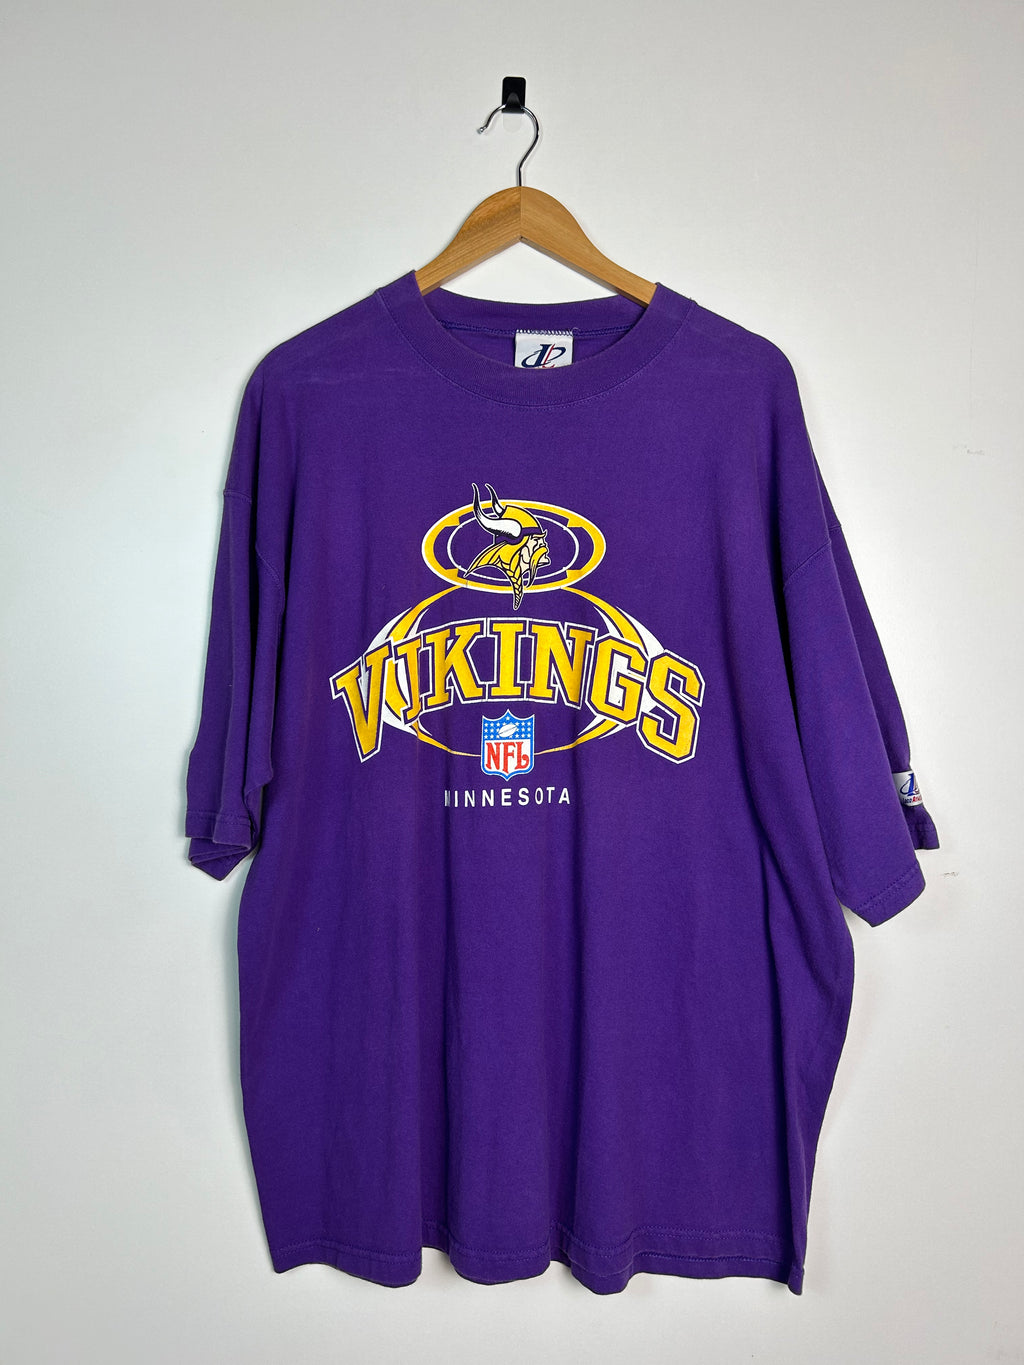 Minnesota Vikings purple tee